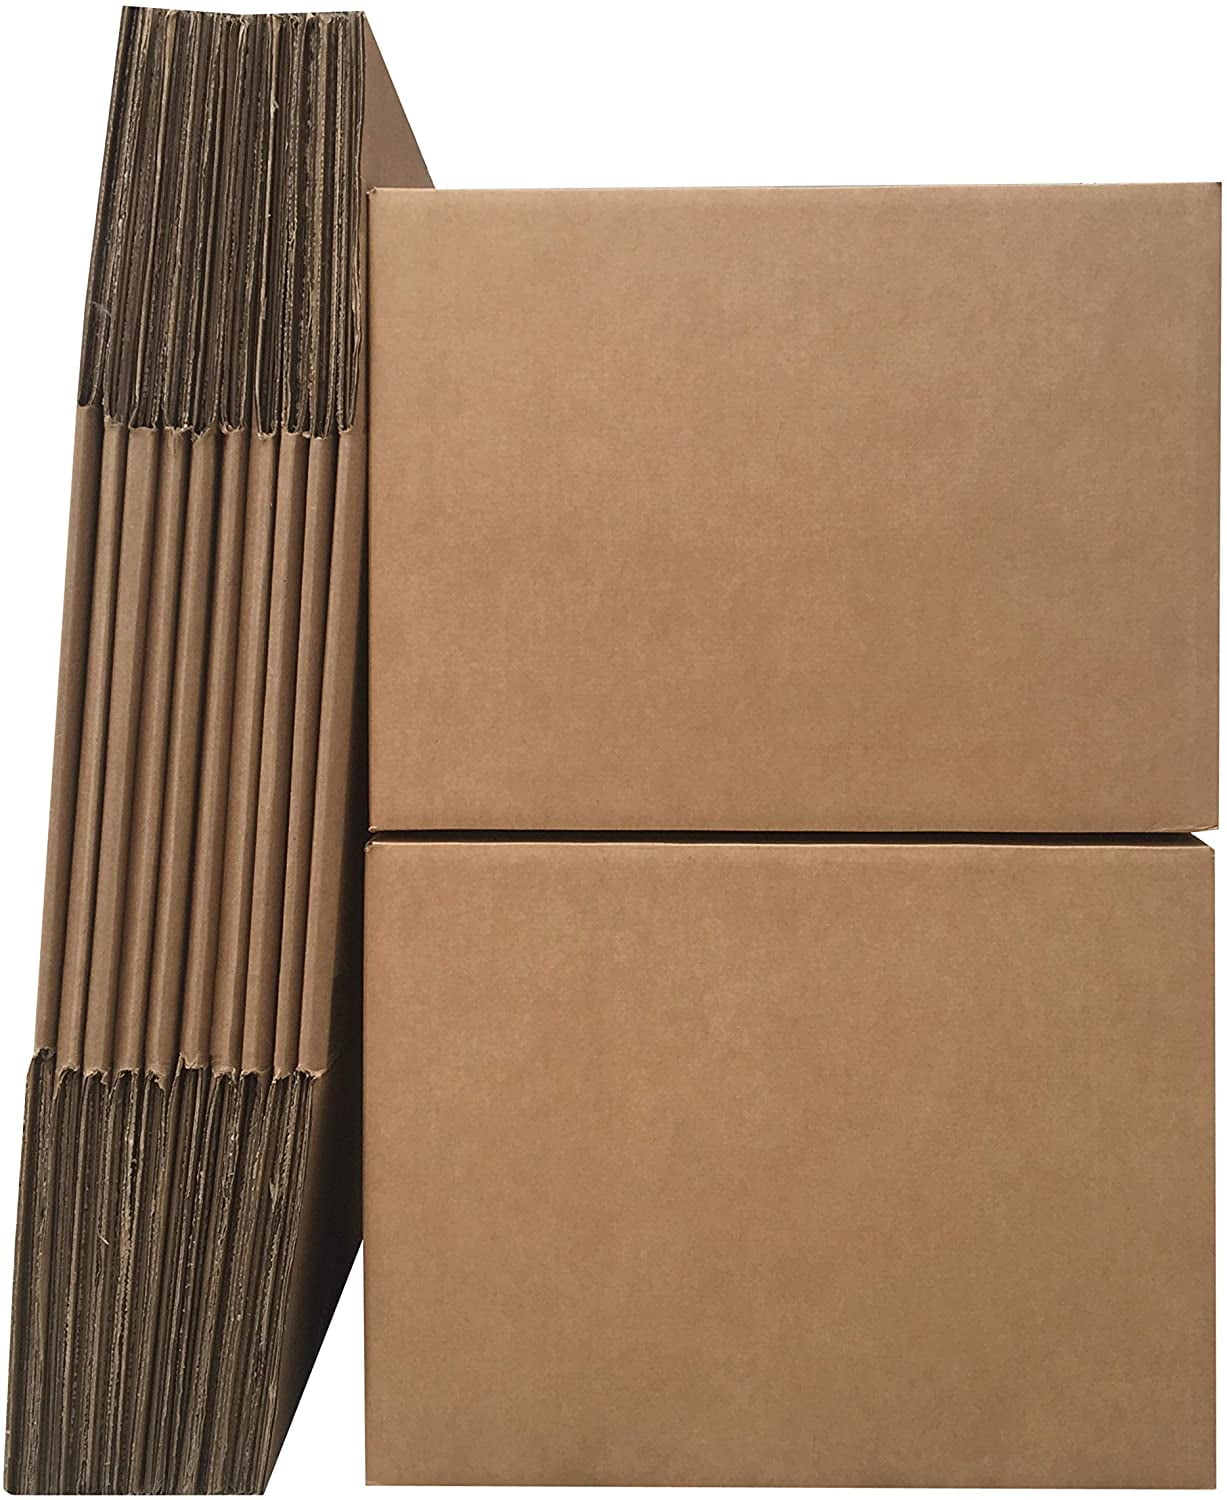 BOXBUNDLAR12 UBOXES Moving Boxes Large 20 x 20 x 15 Inches Bundle of 12 Boxes for Moving 